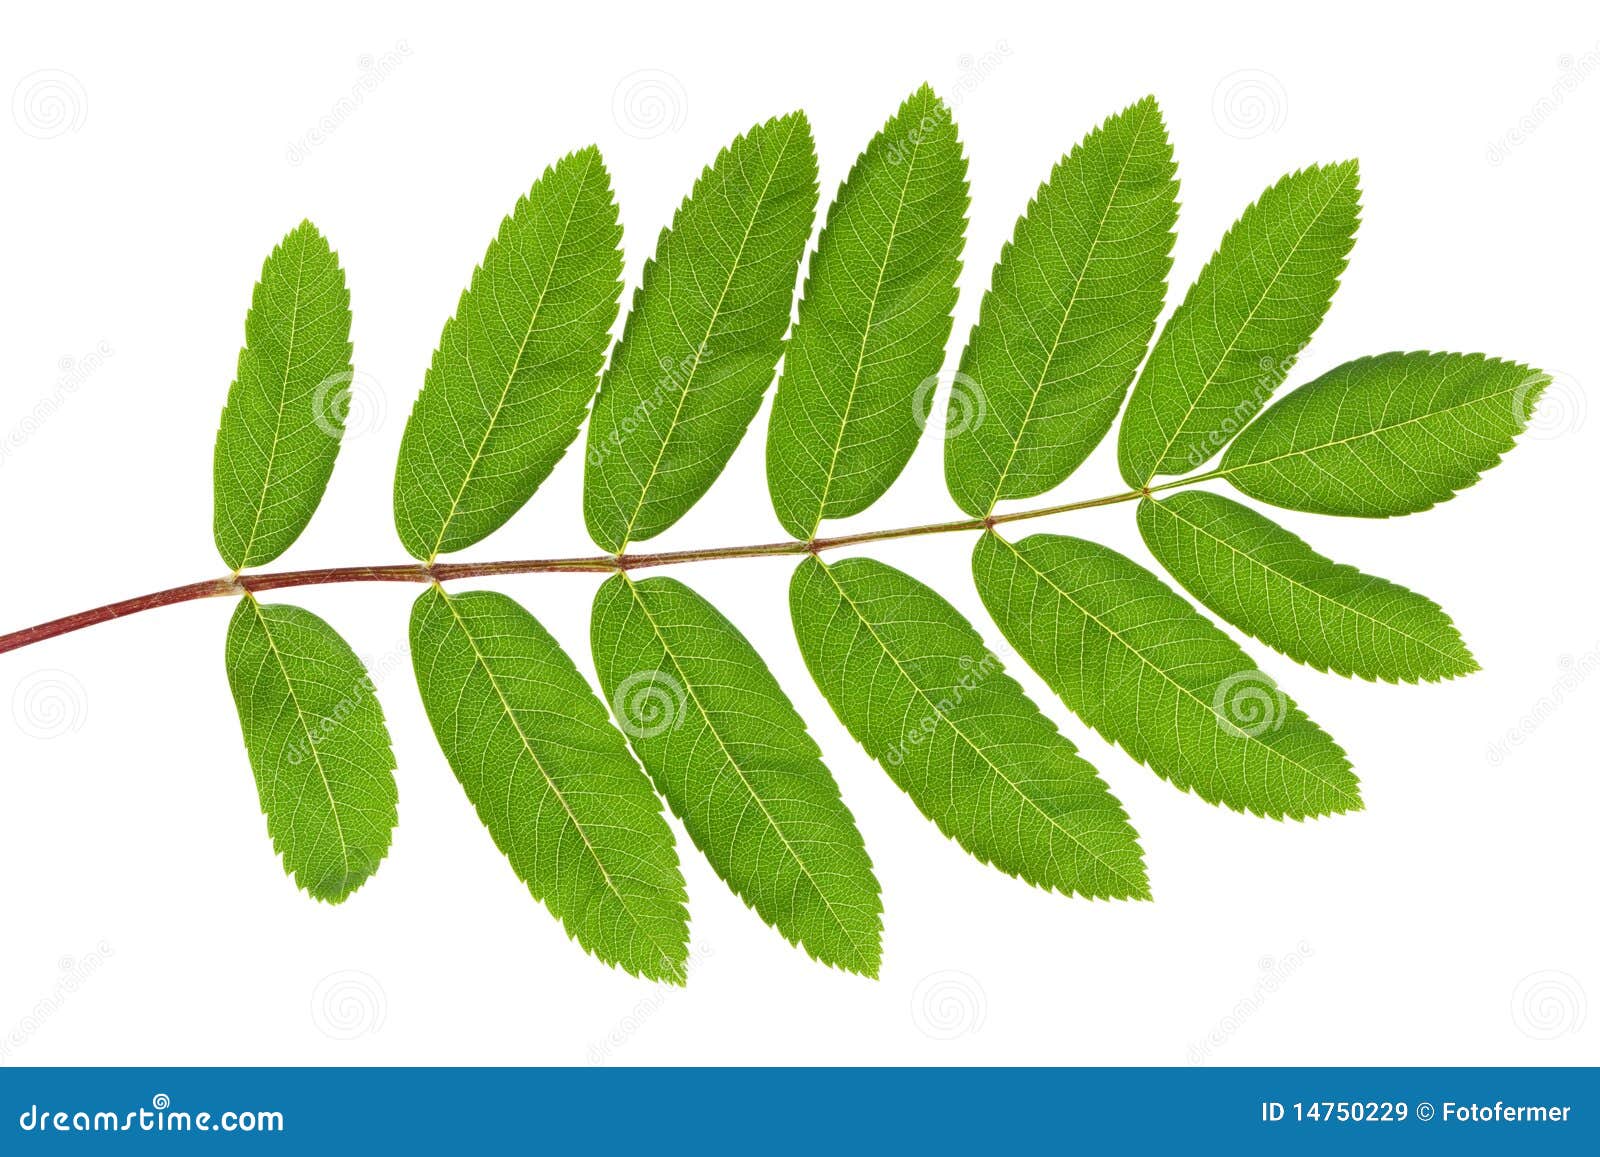 rowan green leaf